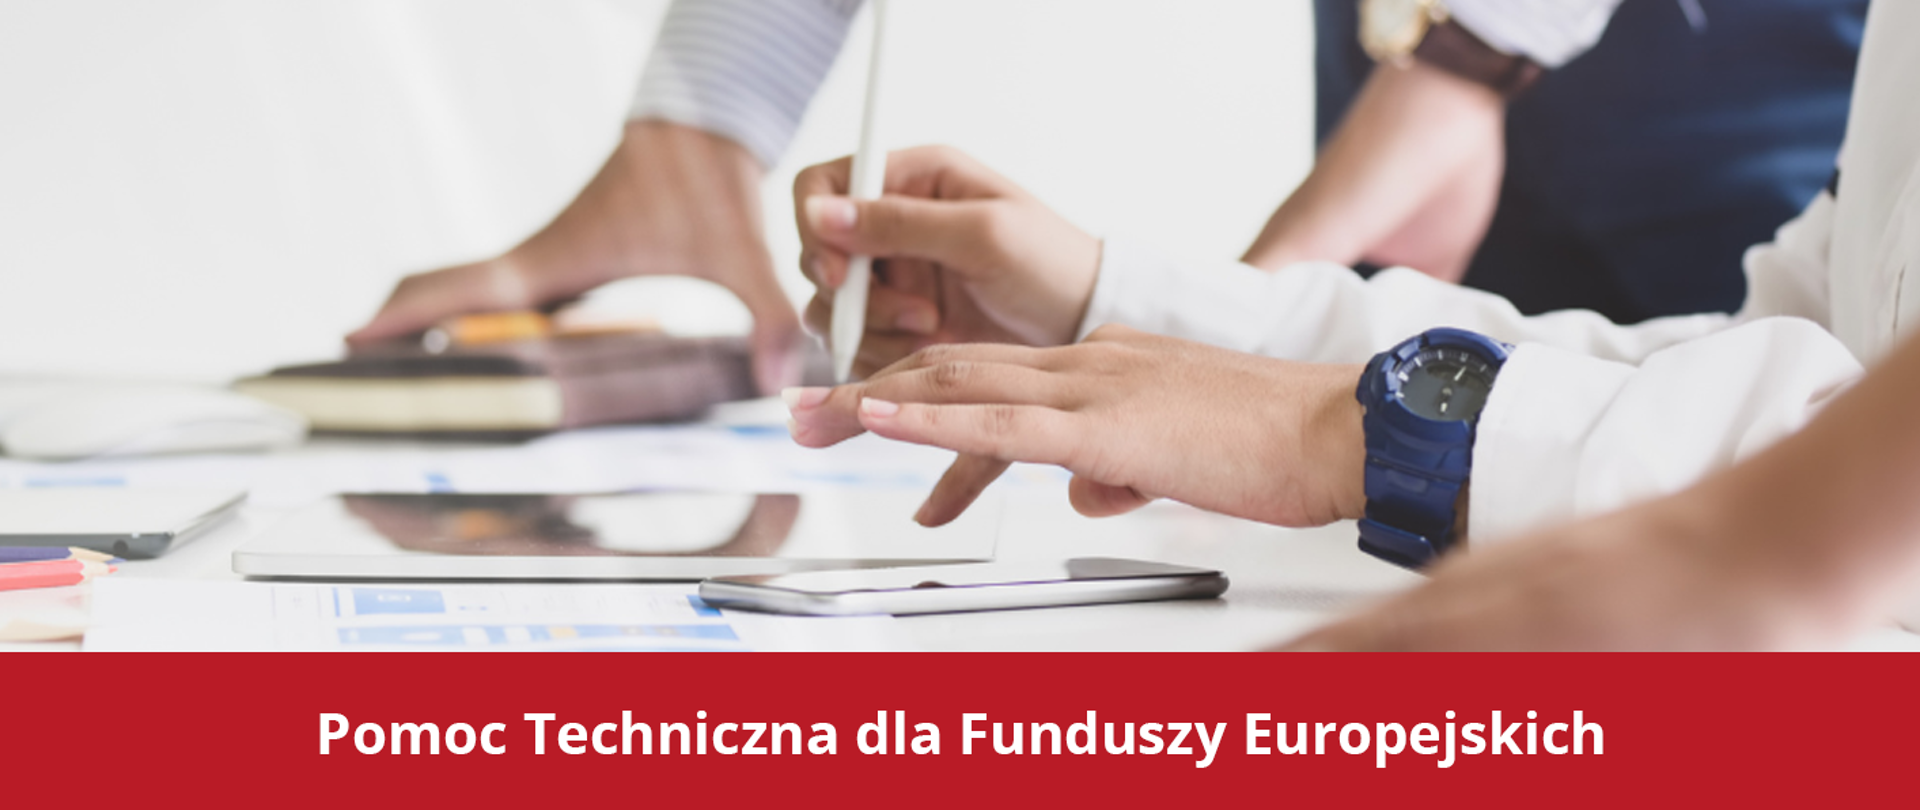 Na grafice zdjęcie dłoni nad biurkiem,: w jednej dłoni ołówek, na drugiej ręce niebieski zegarek. Na dole czerwony pasek z tekstem "Pomoc Techniczna dla Funduszy Europejskich".